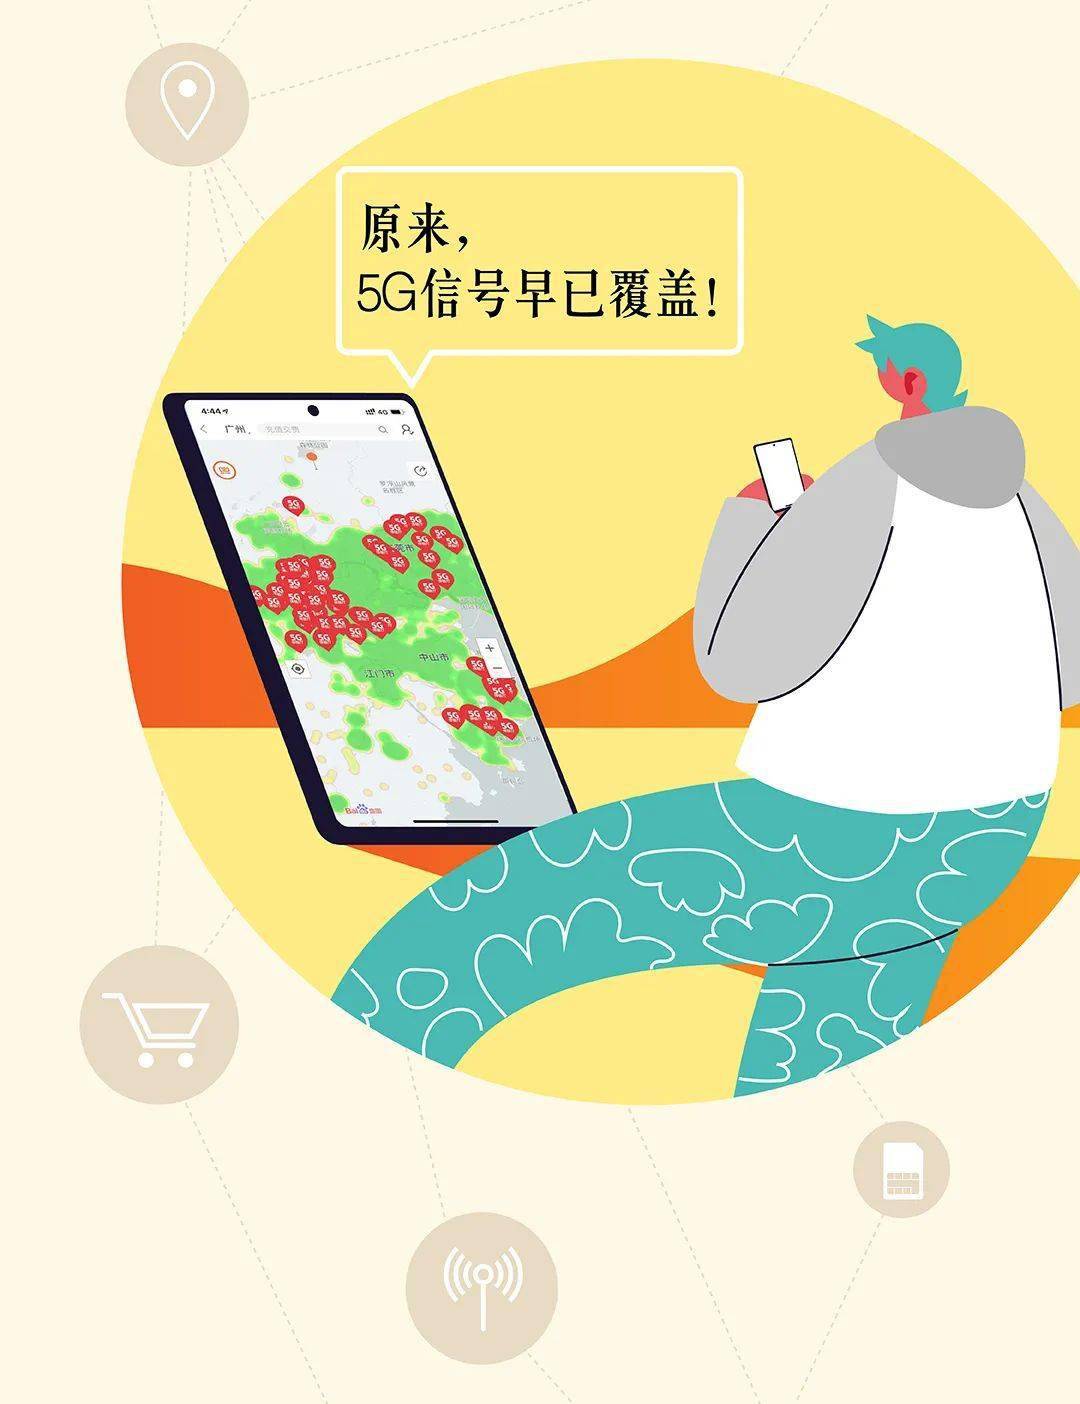 江西漳州 5G 网络覆盖情况及 技术的非凡之处  第6张